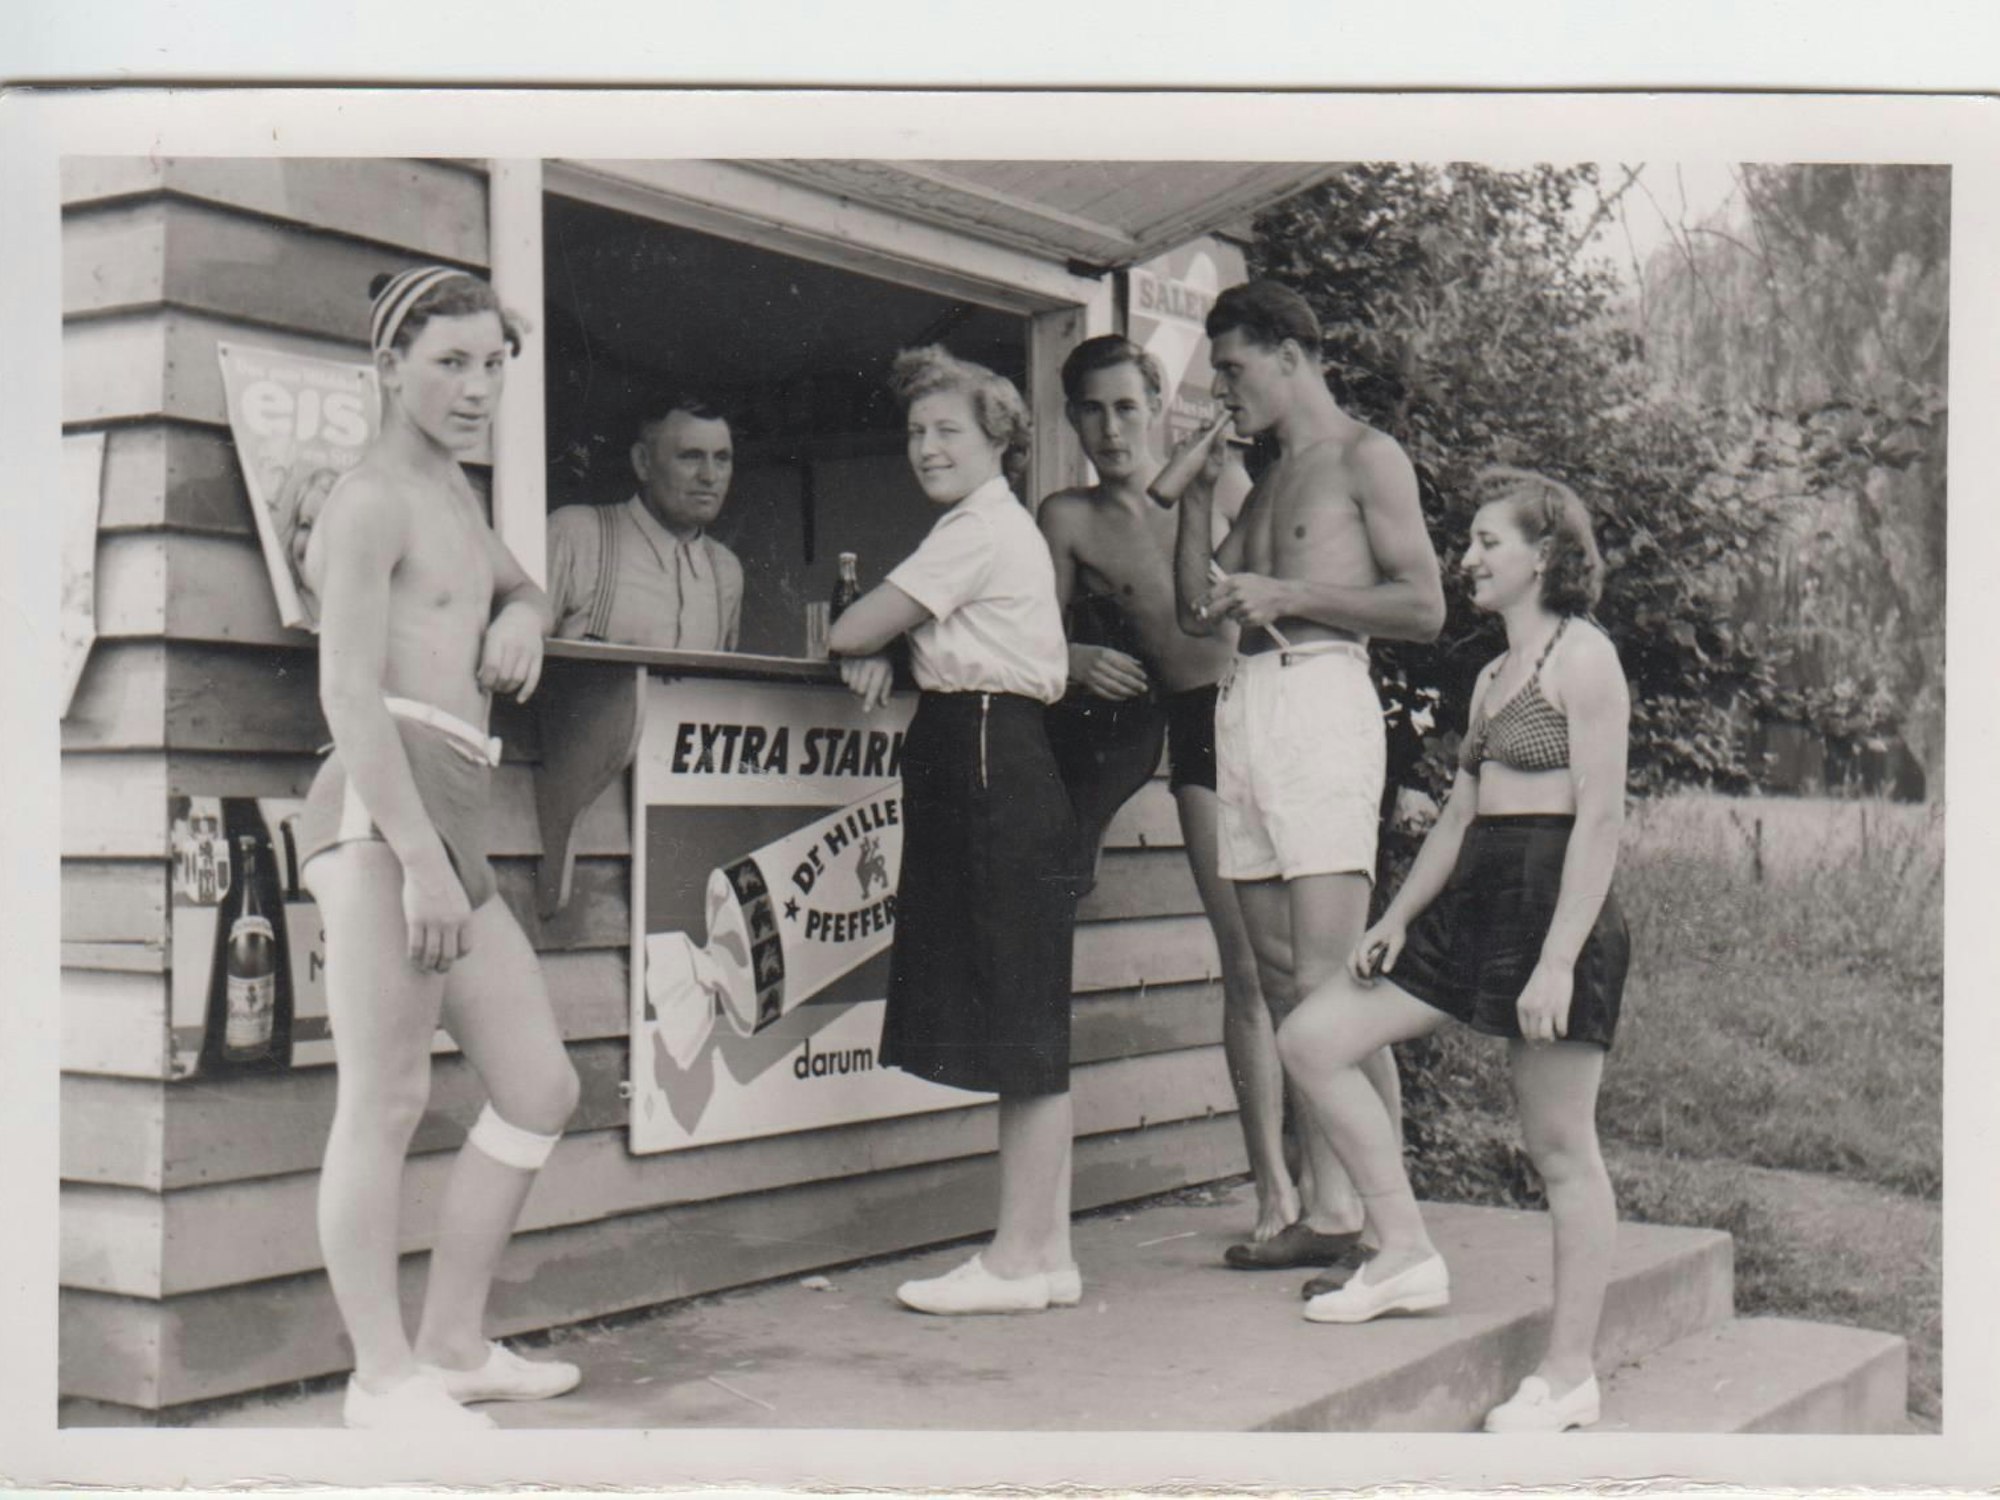 Ein historisches Foto zeigt Menschen in Badekleidung vor einem Trinkbüdchen um 1950.